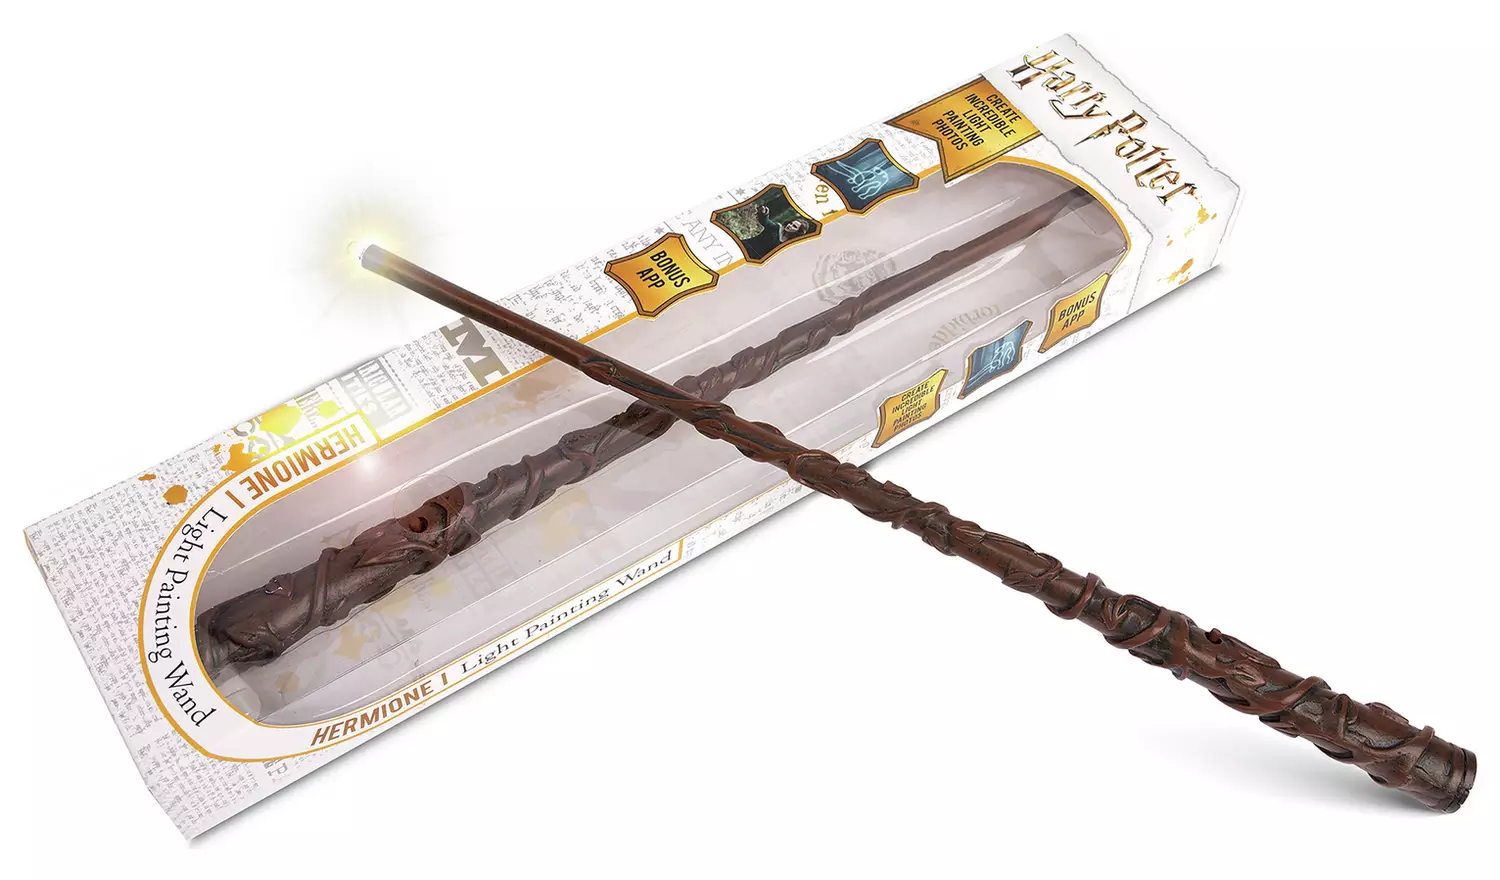 Игрушка Wow! Stuff Harry Potter: Волшебная палочка Гермионы Грейнджер (рисует светом) (34 см)